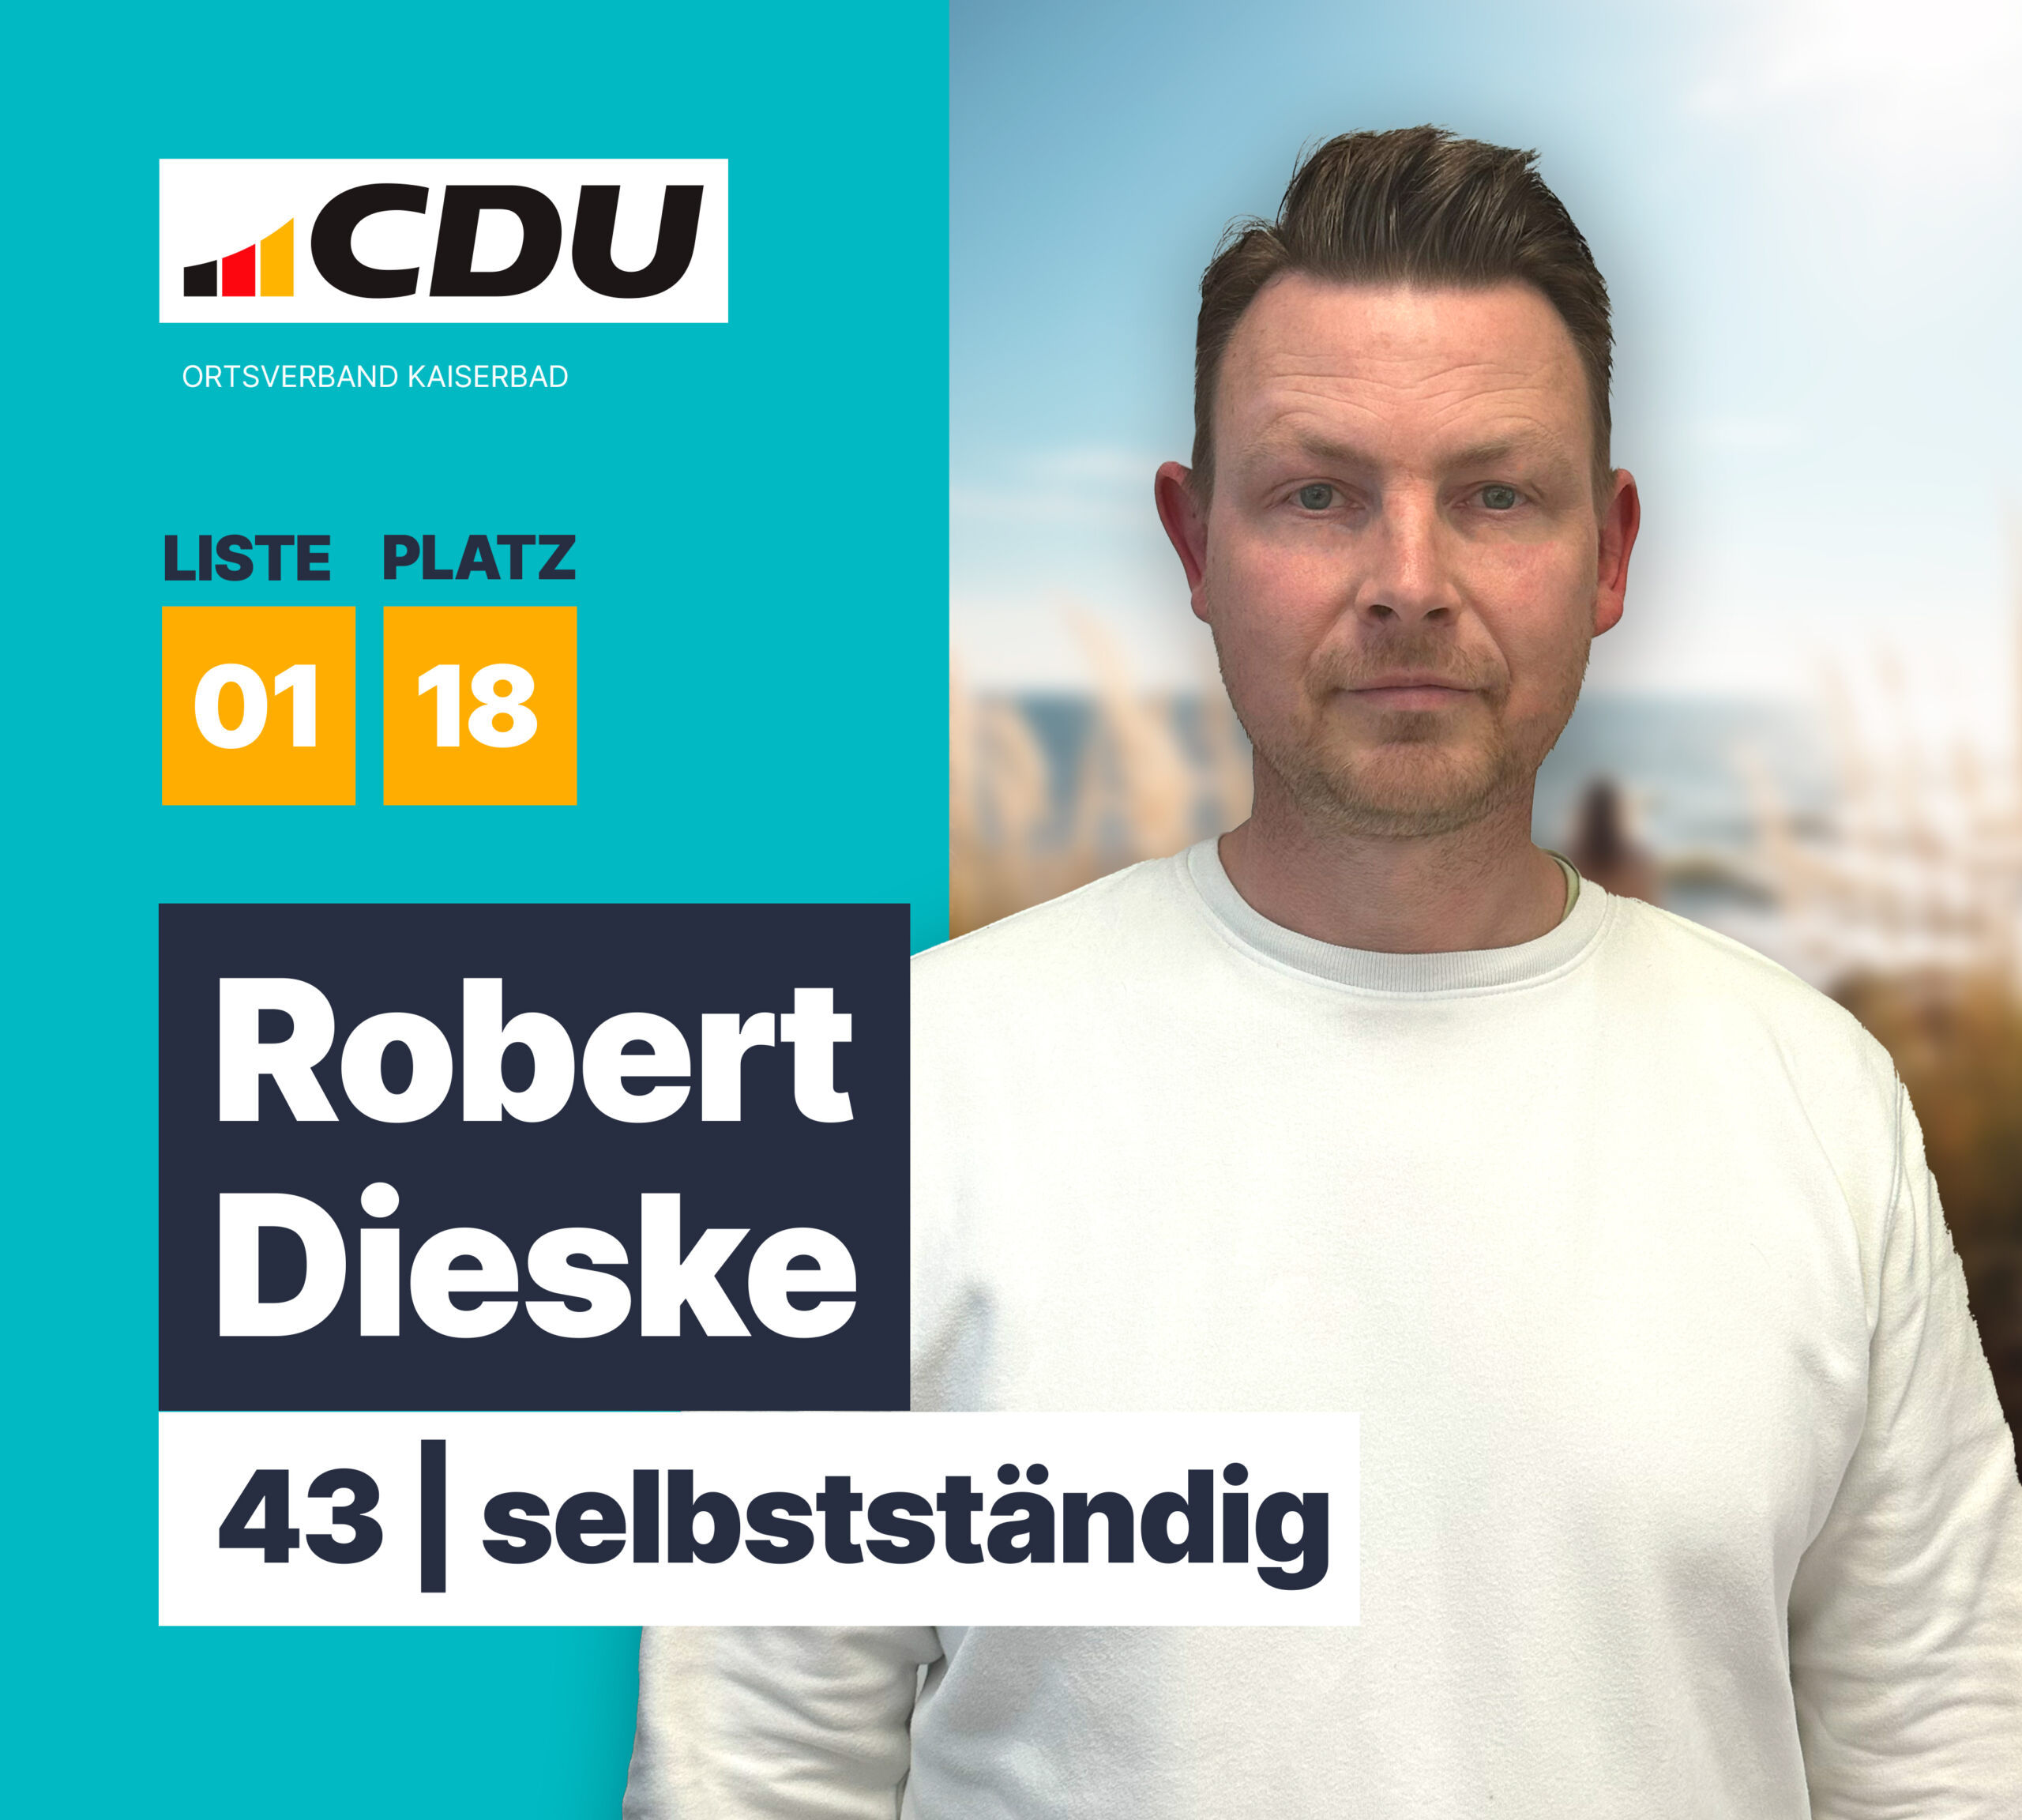 Robert Dieske